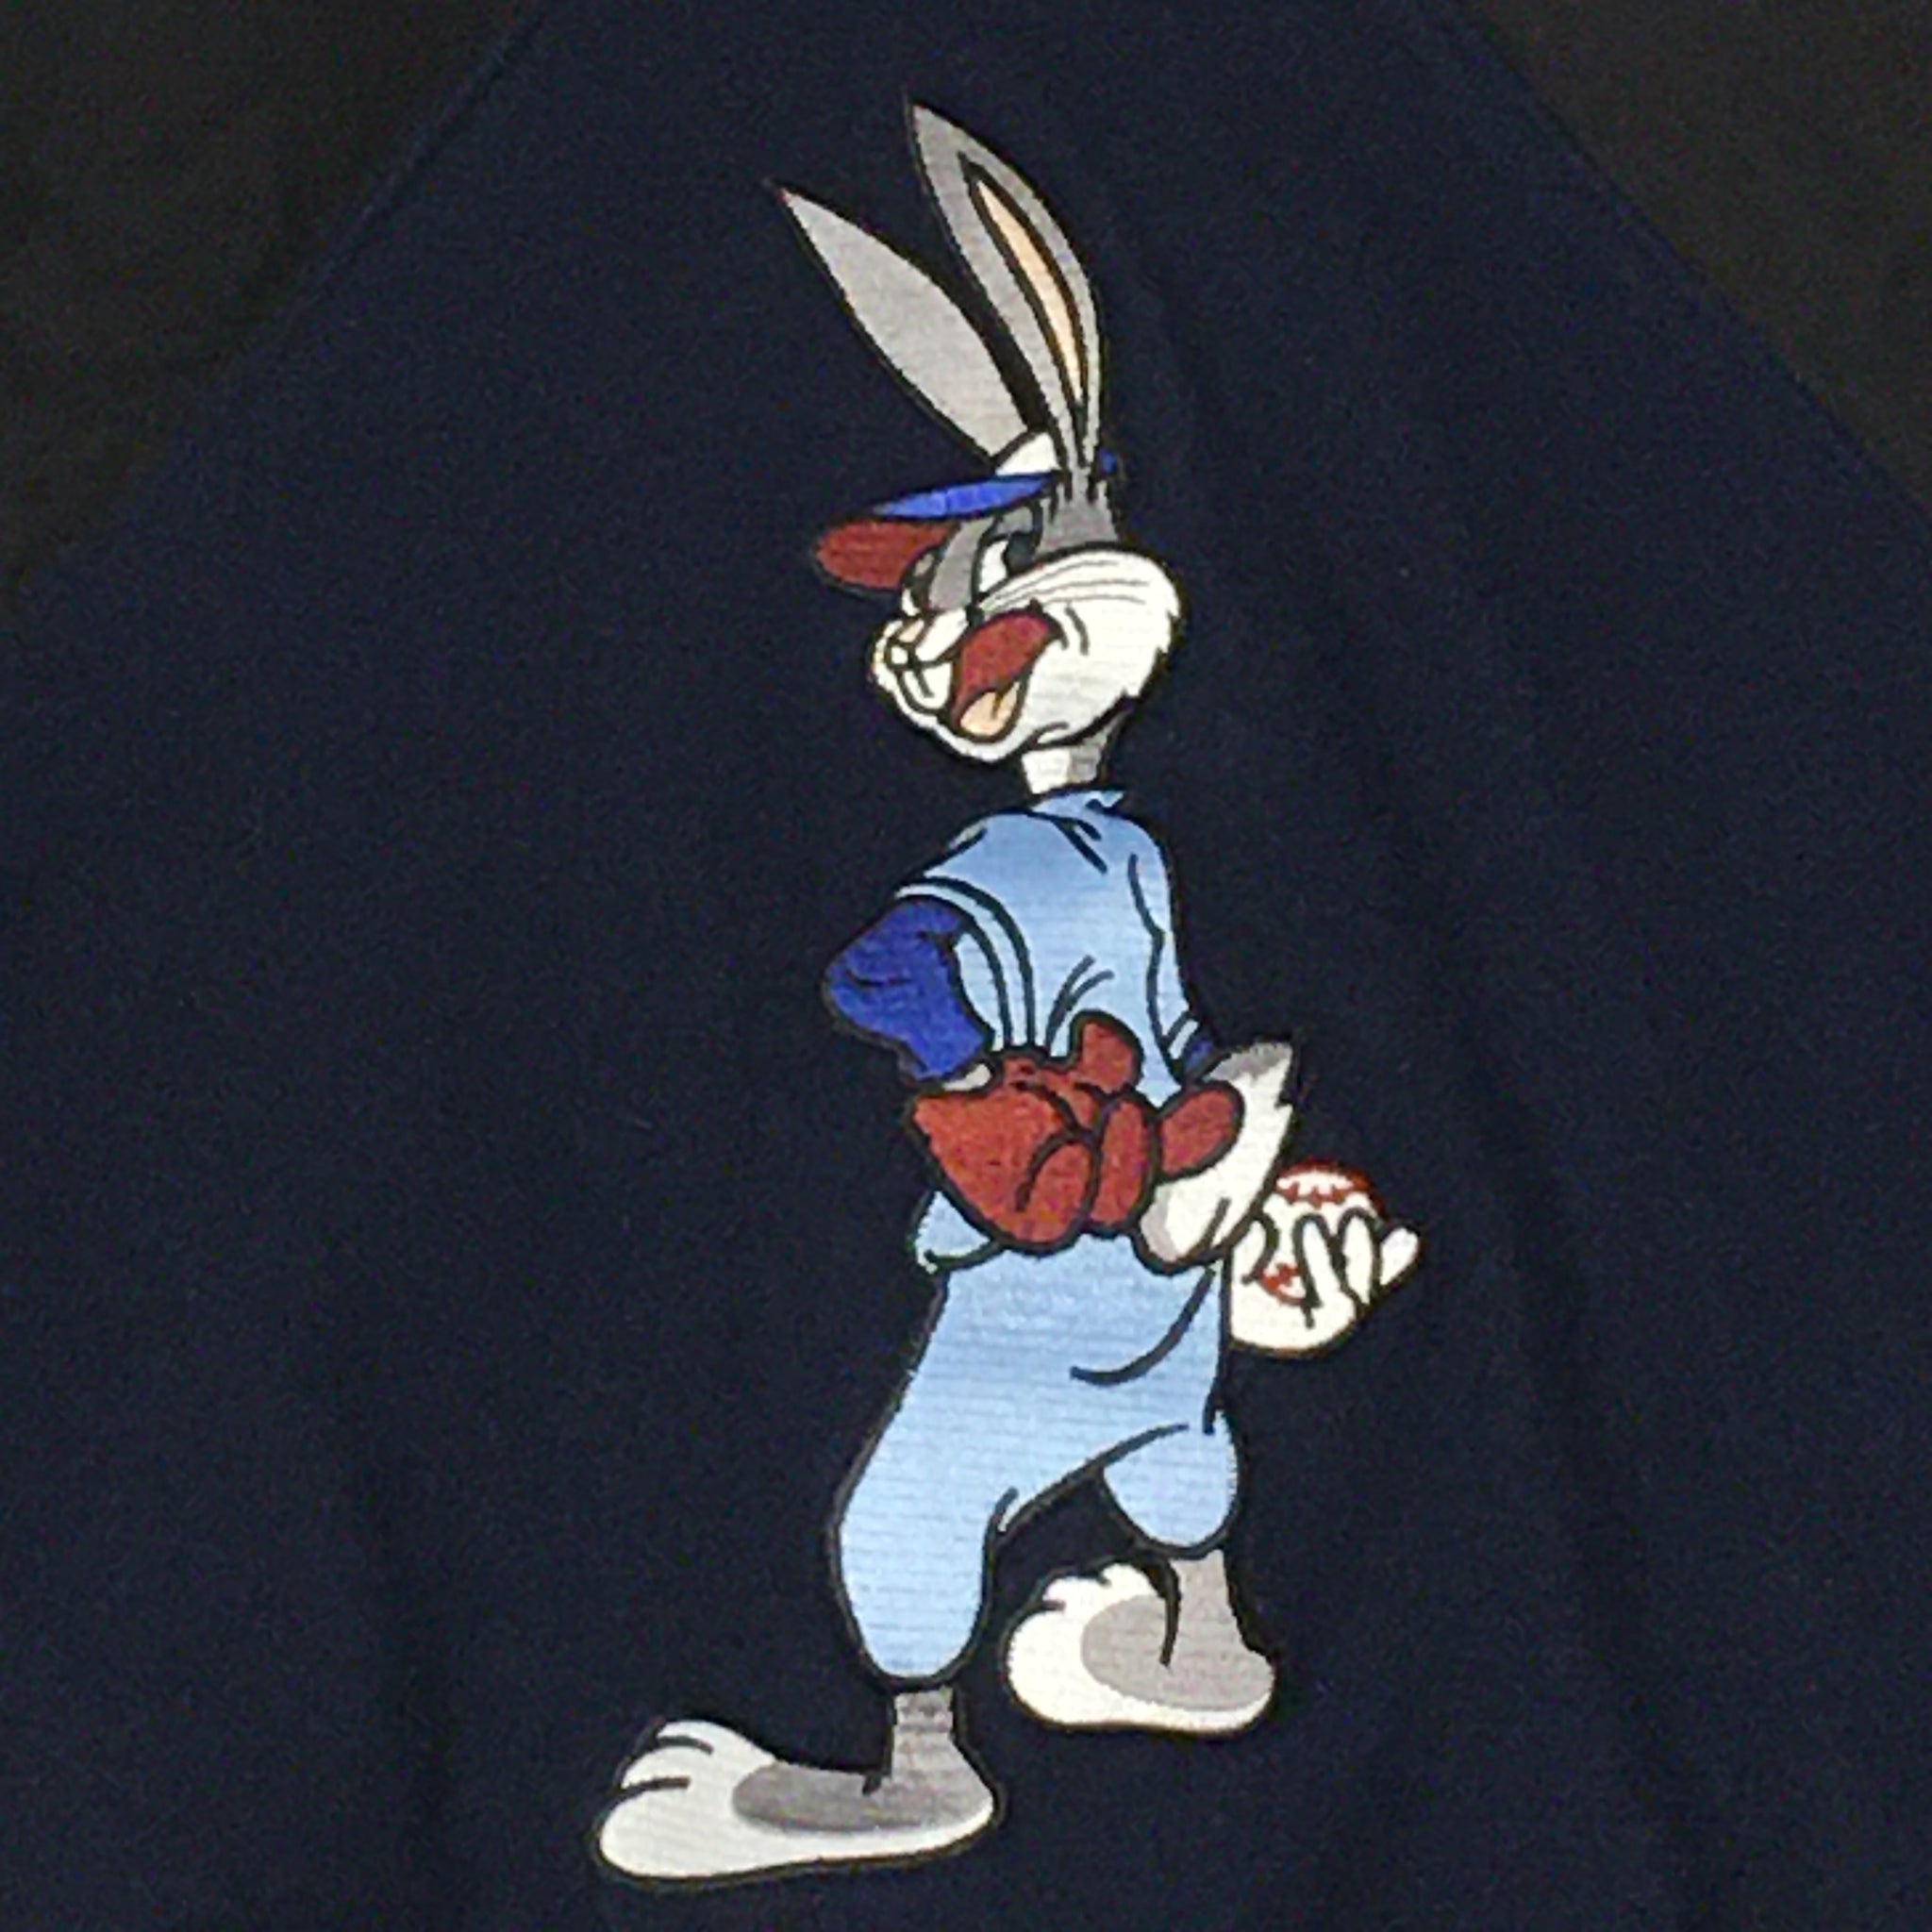 90s Looney Tunes Varsity Jacket – Shoptwistedvintage